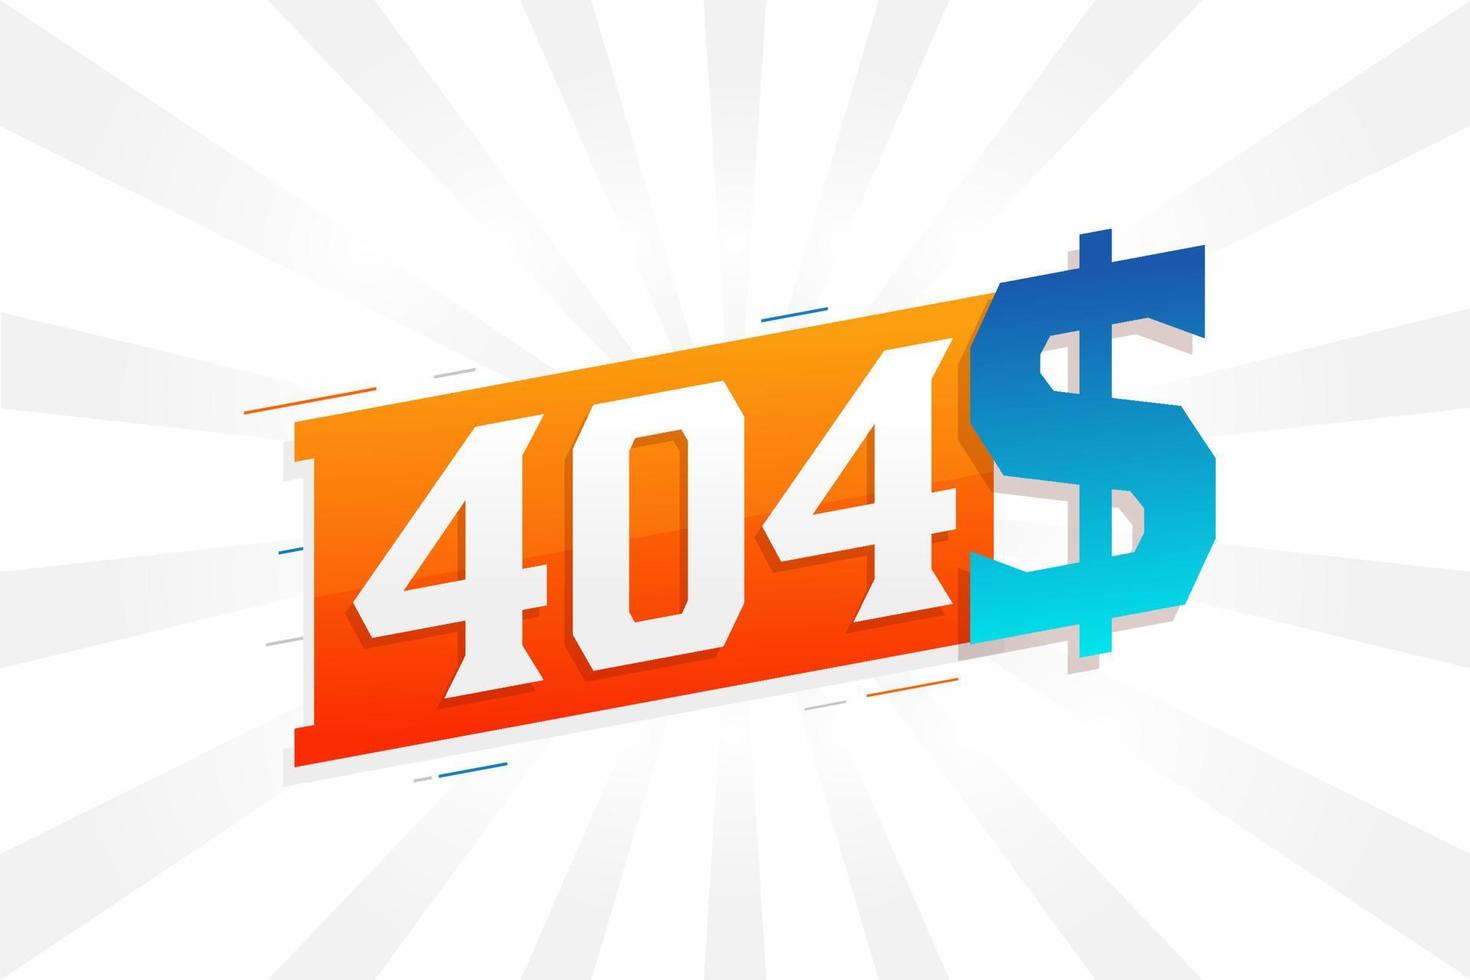 símbolo de texto de vetor de moeda de 404 dólares. 404 usd vetor de estoque de dinheiro americano dólar dos estados unidos